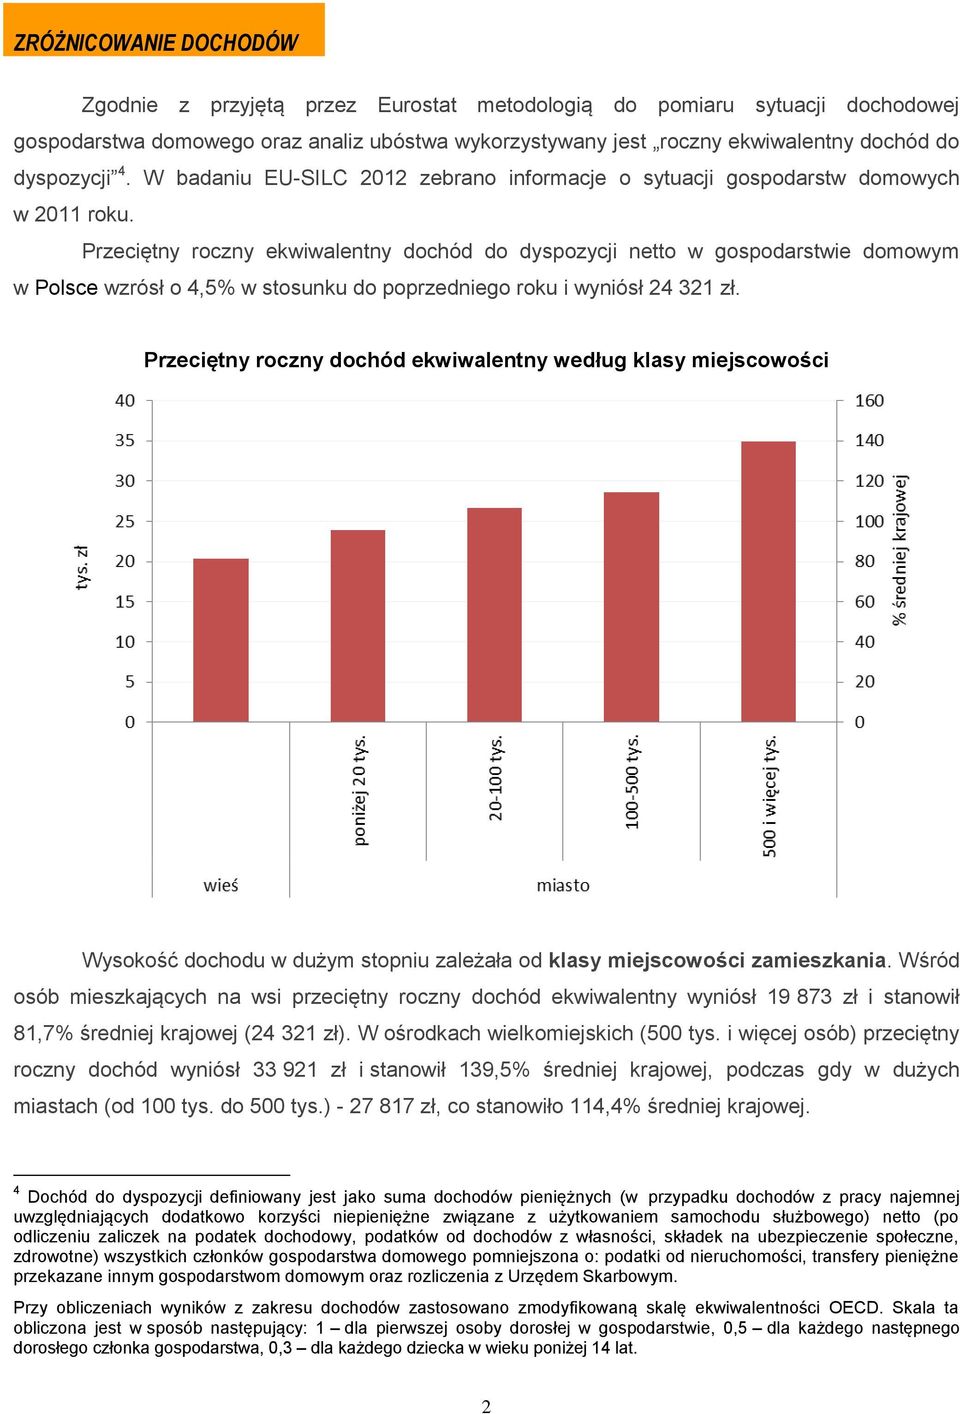 Przeciętny roczny ekwiwalentny dochód do dyspozycji netto w gospodarstwie domowym w Polsce wzrósł o 4,5% w stosunku do poprzedniego roku i wyniósł 24 321 zł.